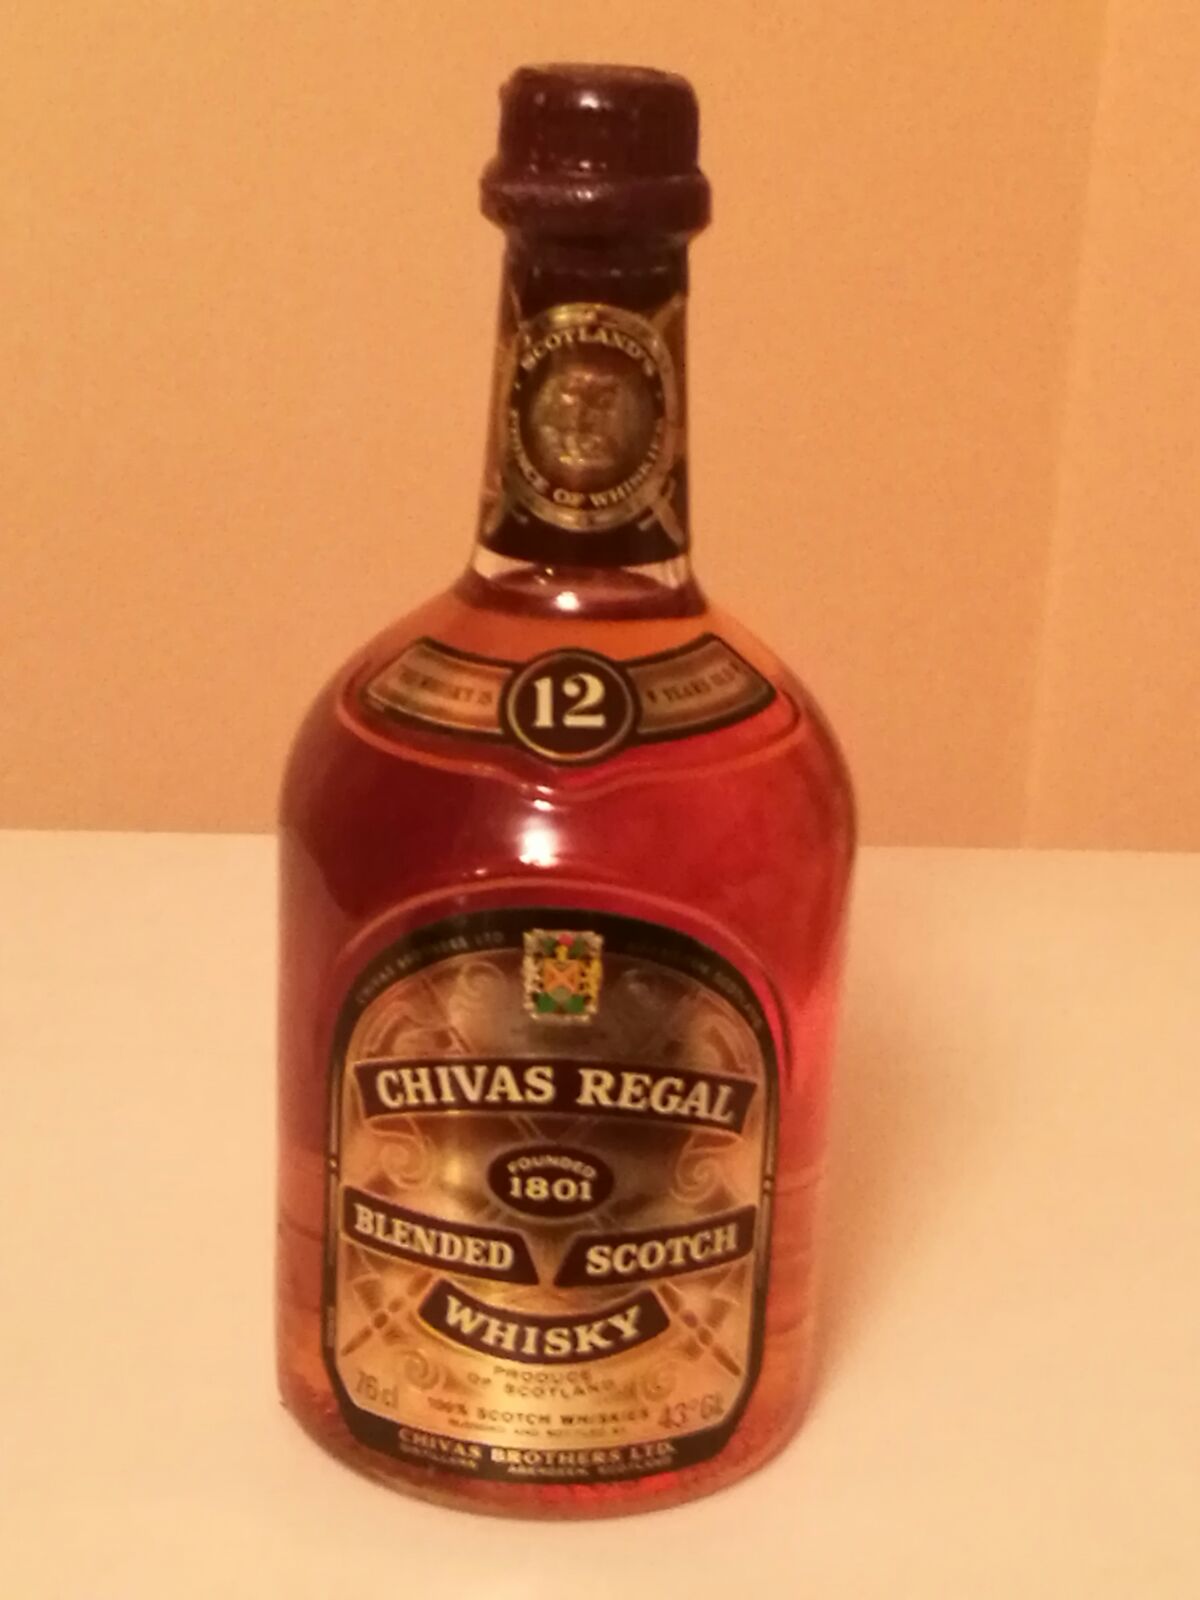 25 Bouteille De Whisky Chivas Regal Photographie éditorial - Image du  distillerie, mélangé: 178099277